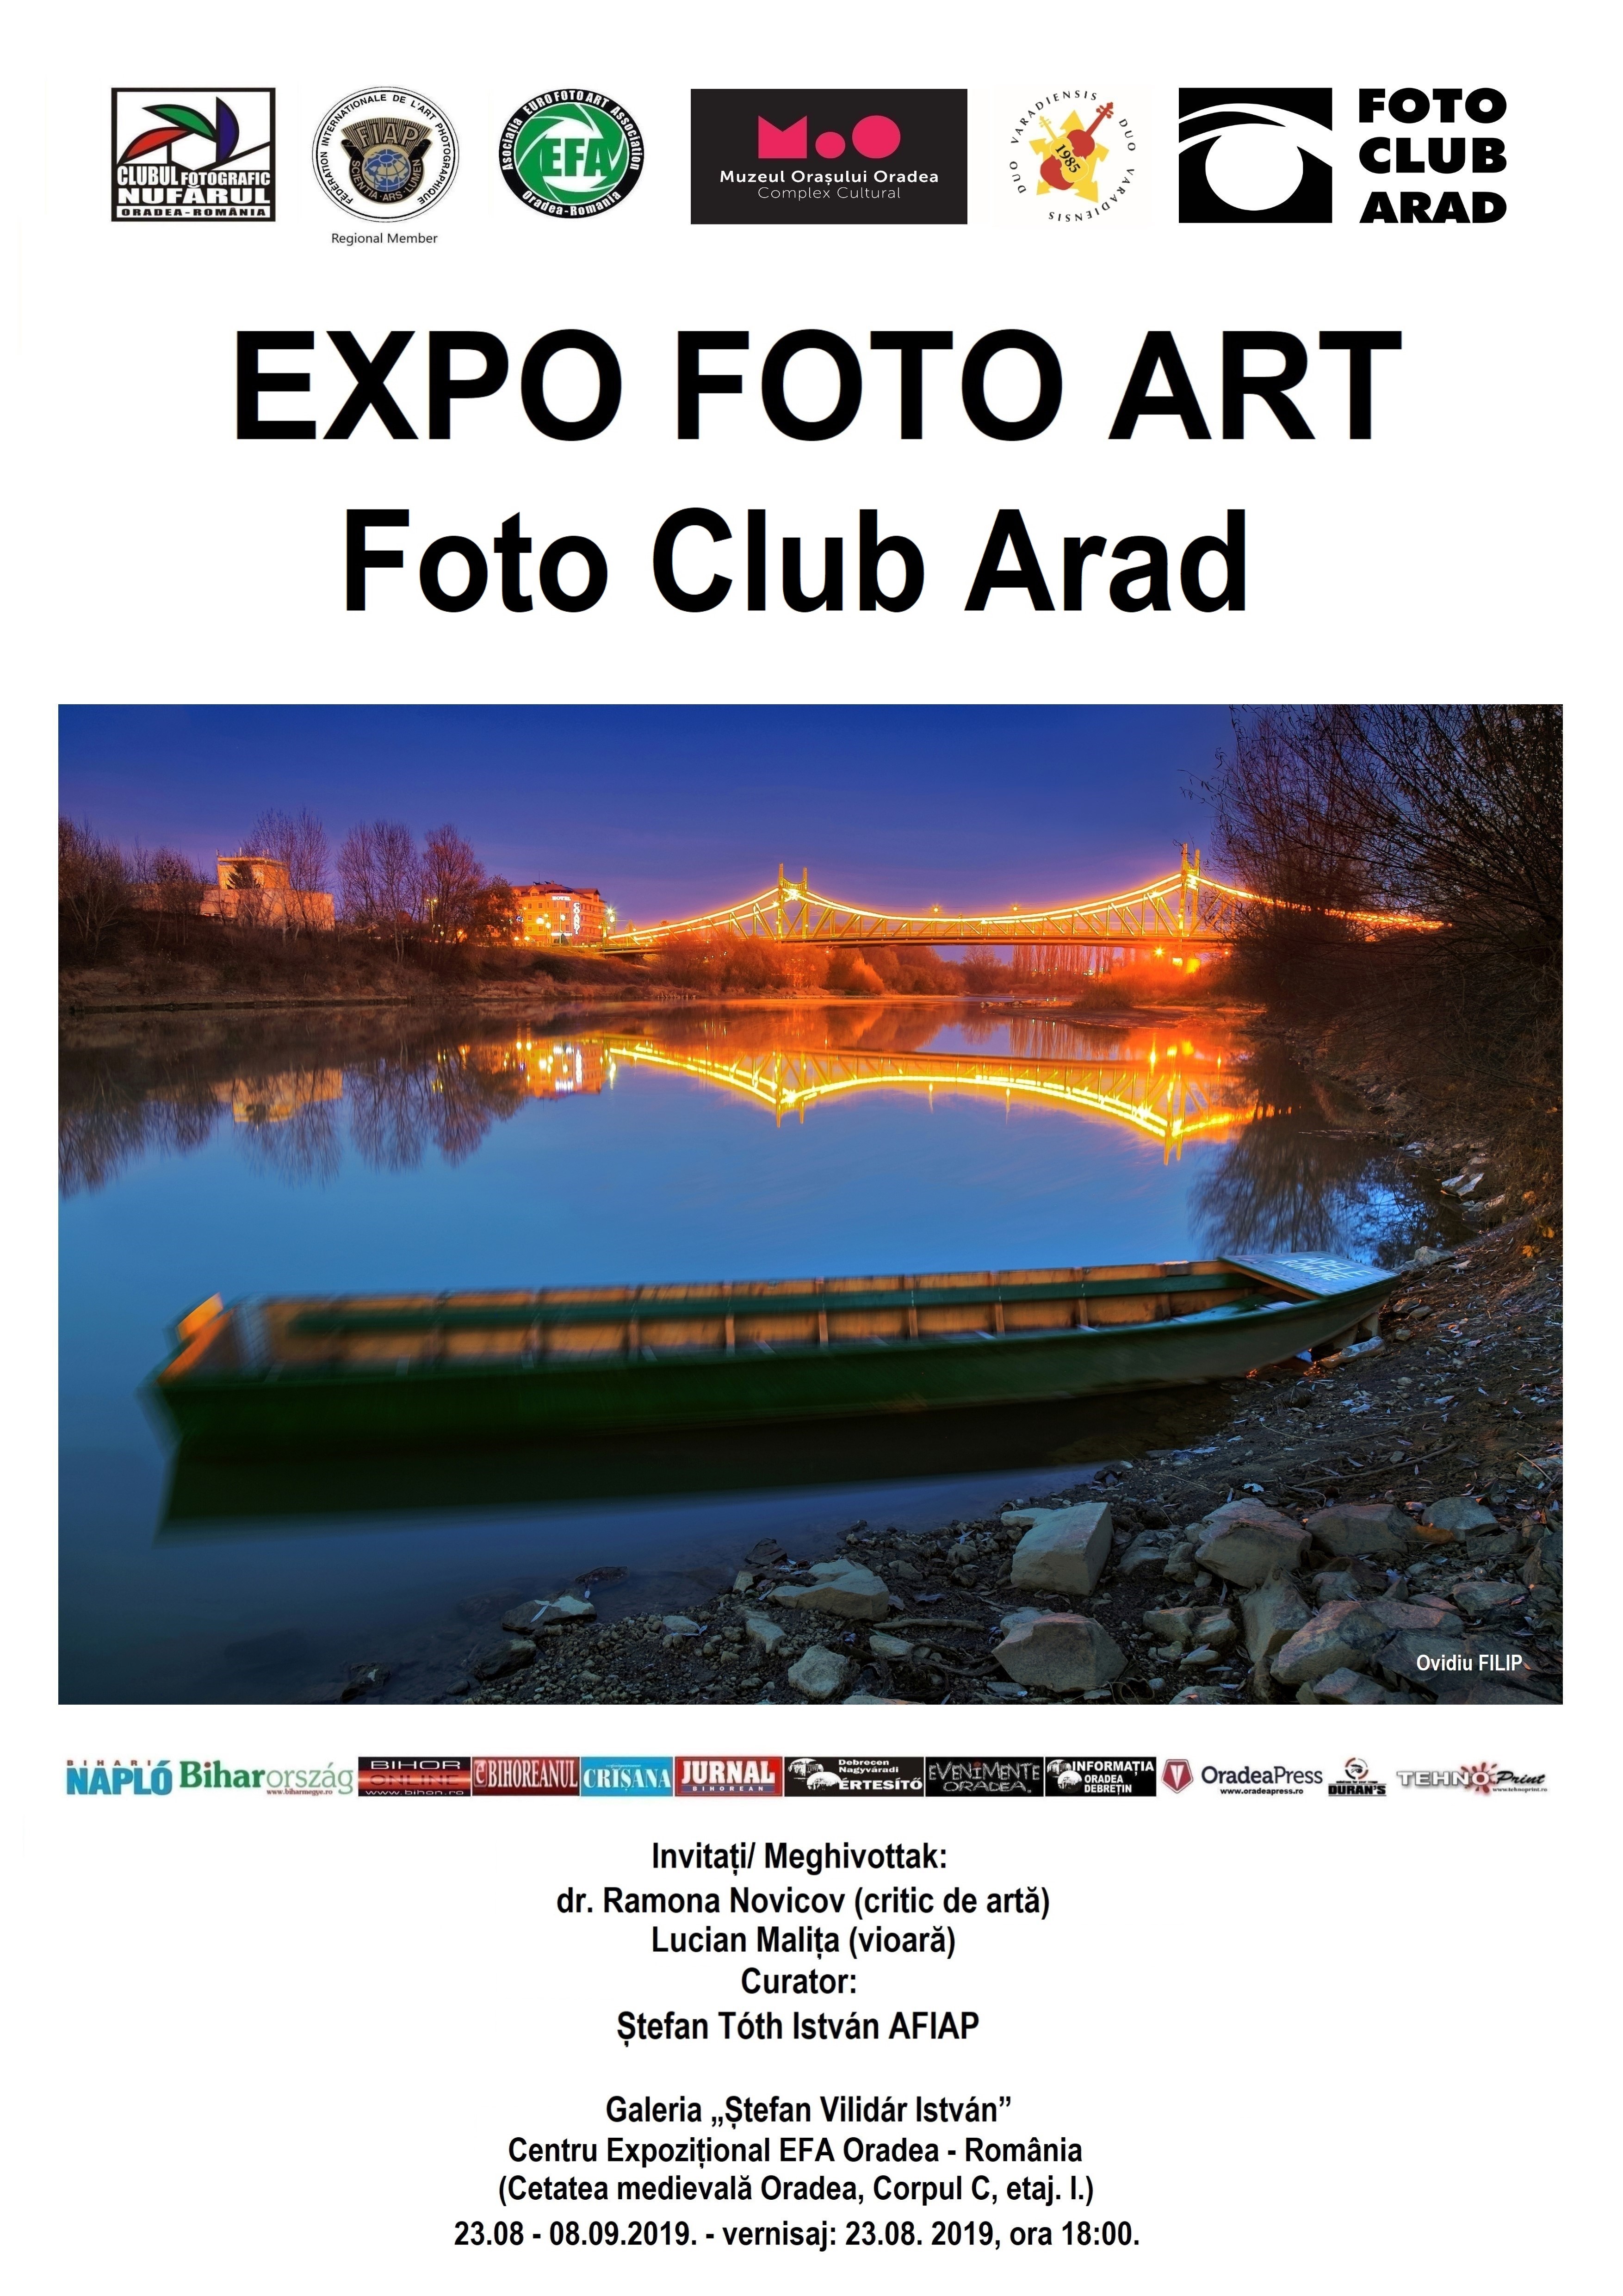 Asociația Foto Club Arad prezintă un vernisaj la Oradea